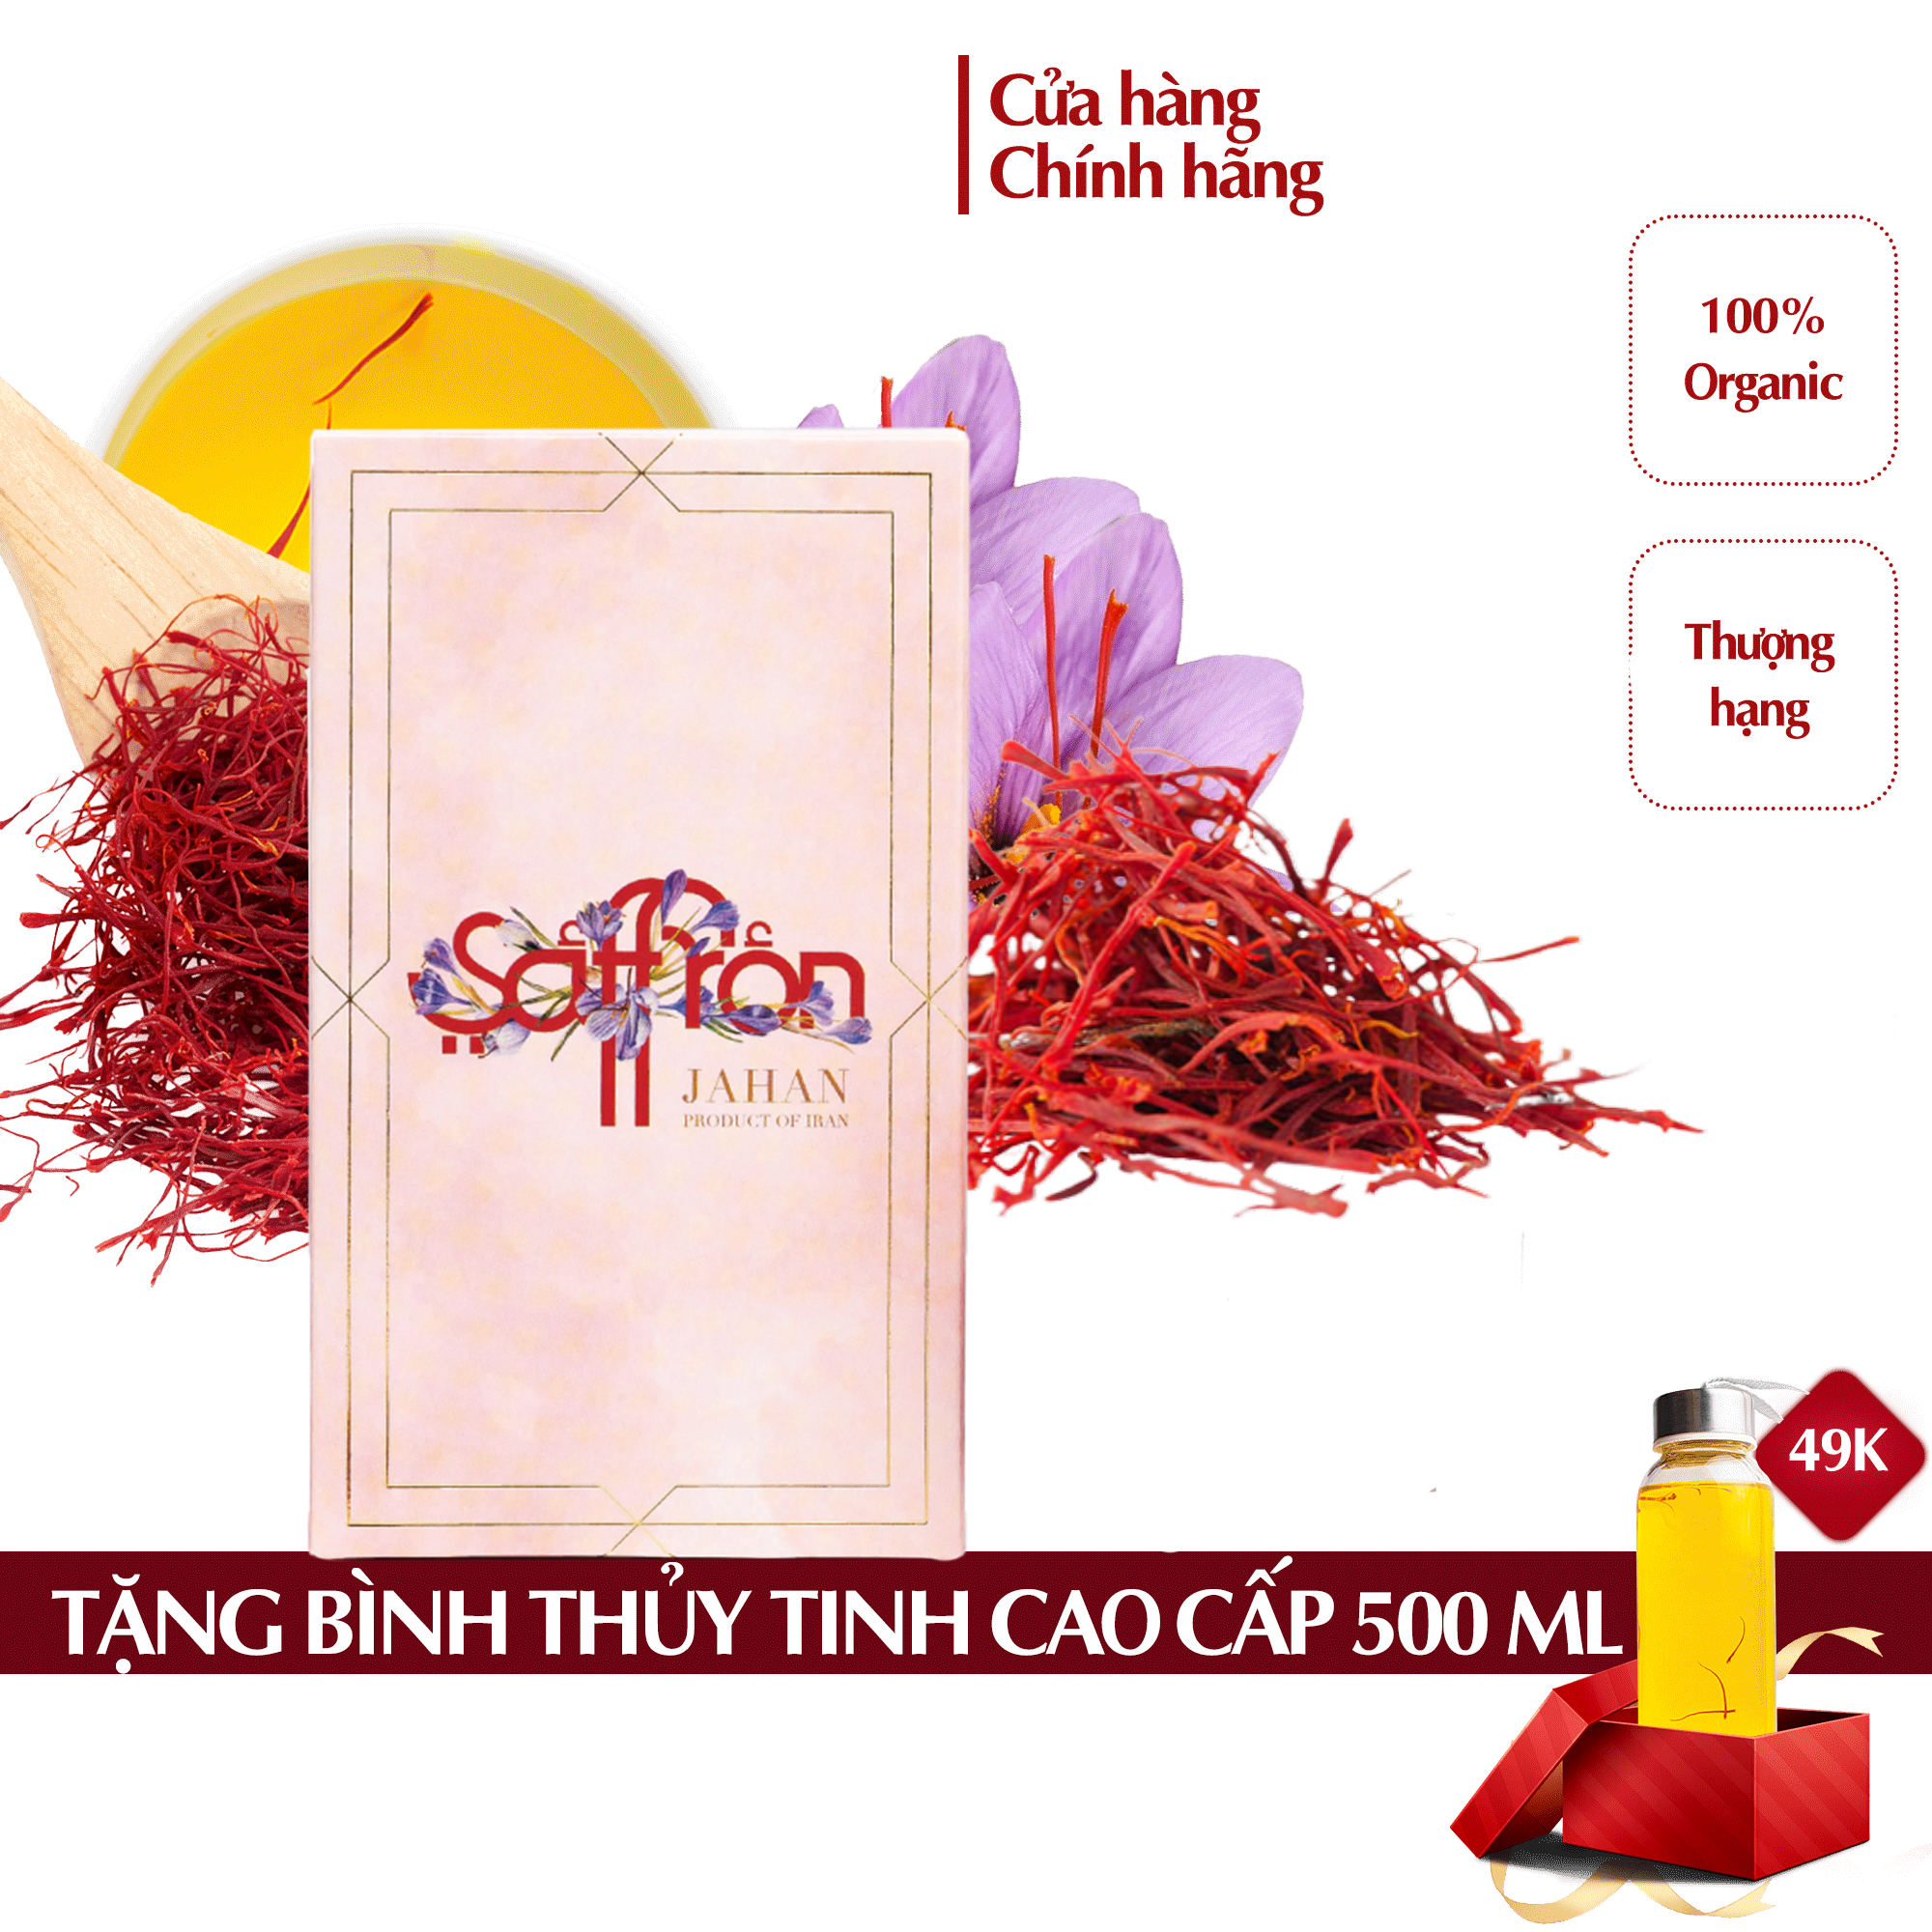 Nhụy Hoa Nghệ Tây Saffron Jahan 1Gr/hộp tặng lọ thủy tinh 300ml